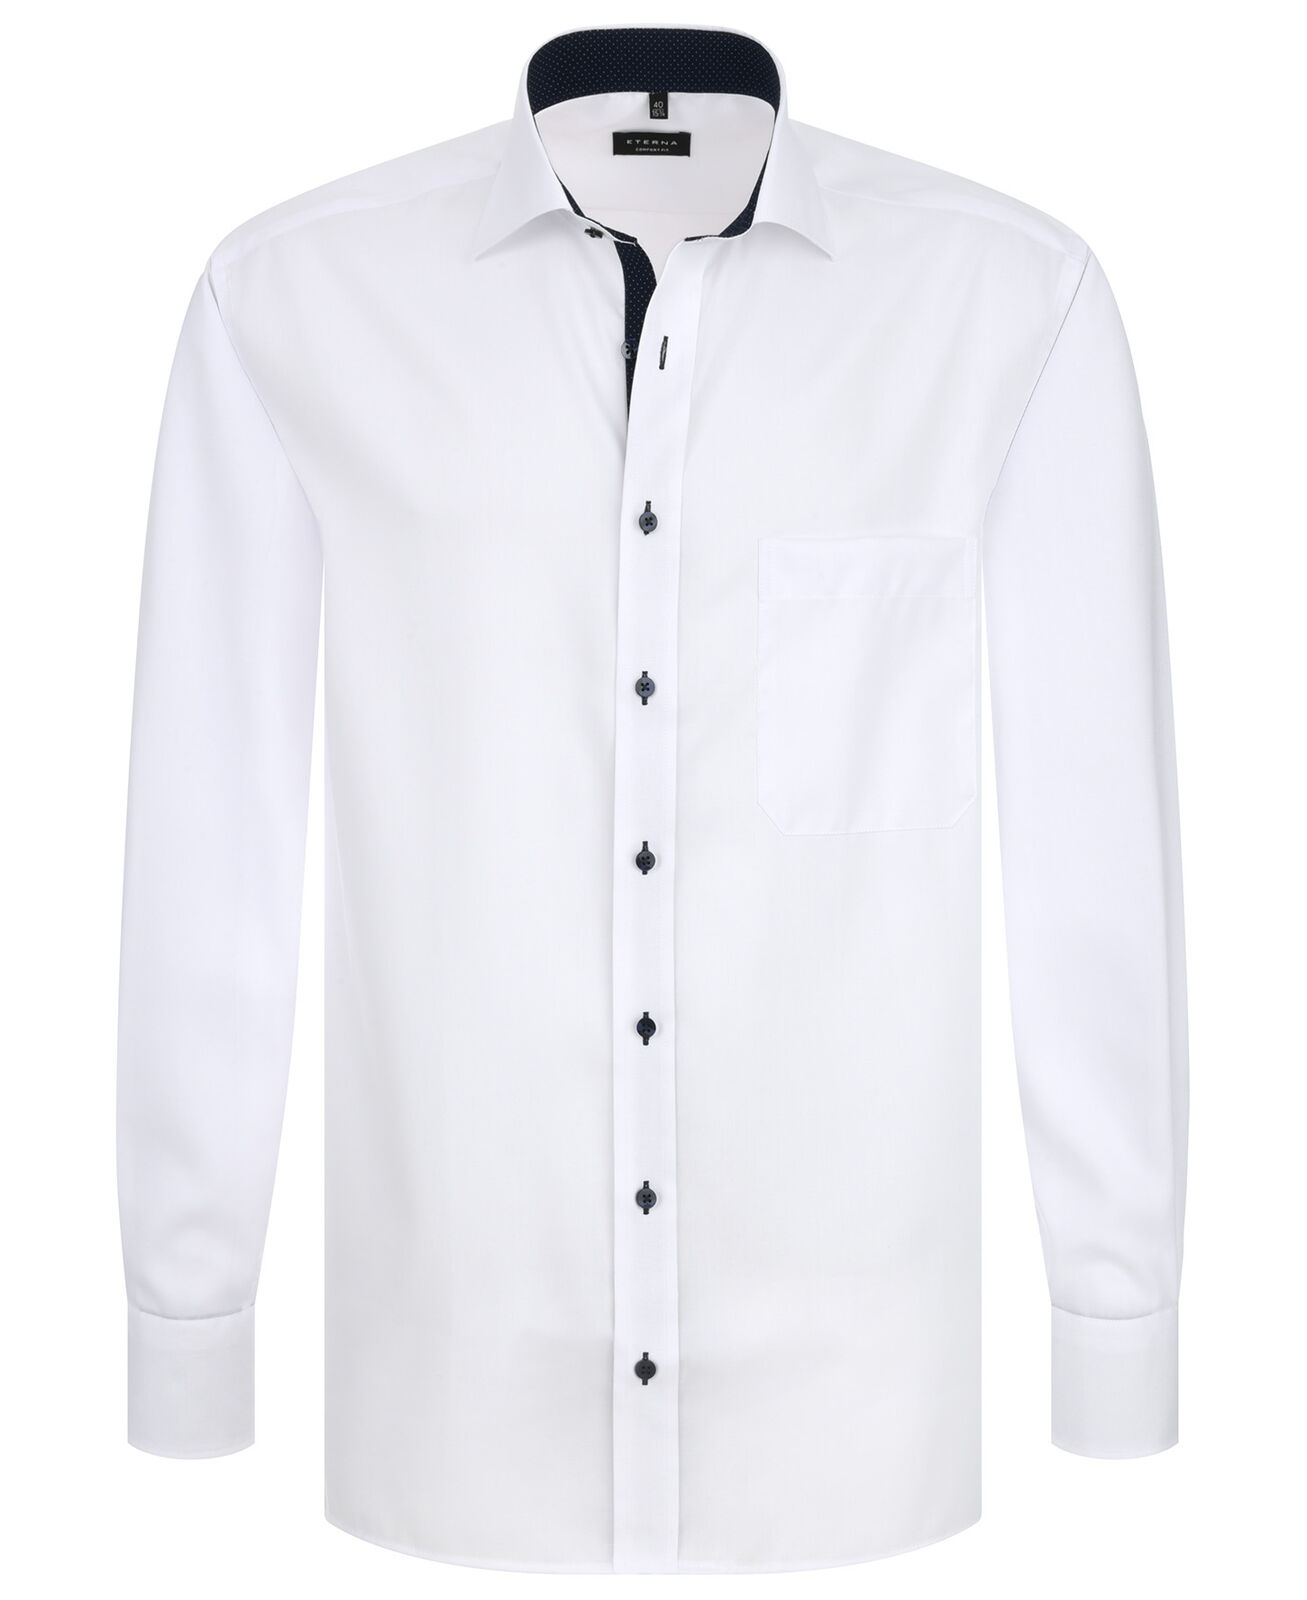 Eterna Long Sleeve Shirt White Opaque 8100-00-e137 - Comfort Fit Shirt Men